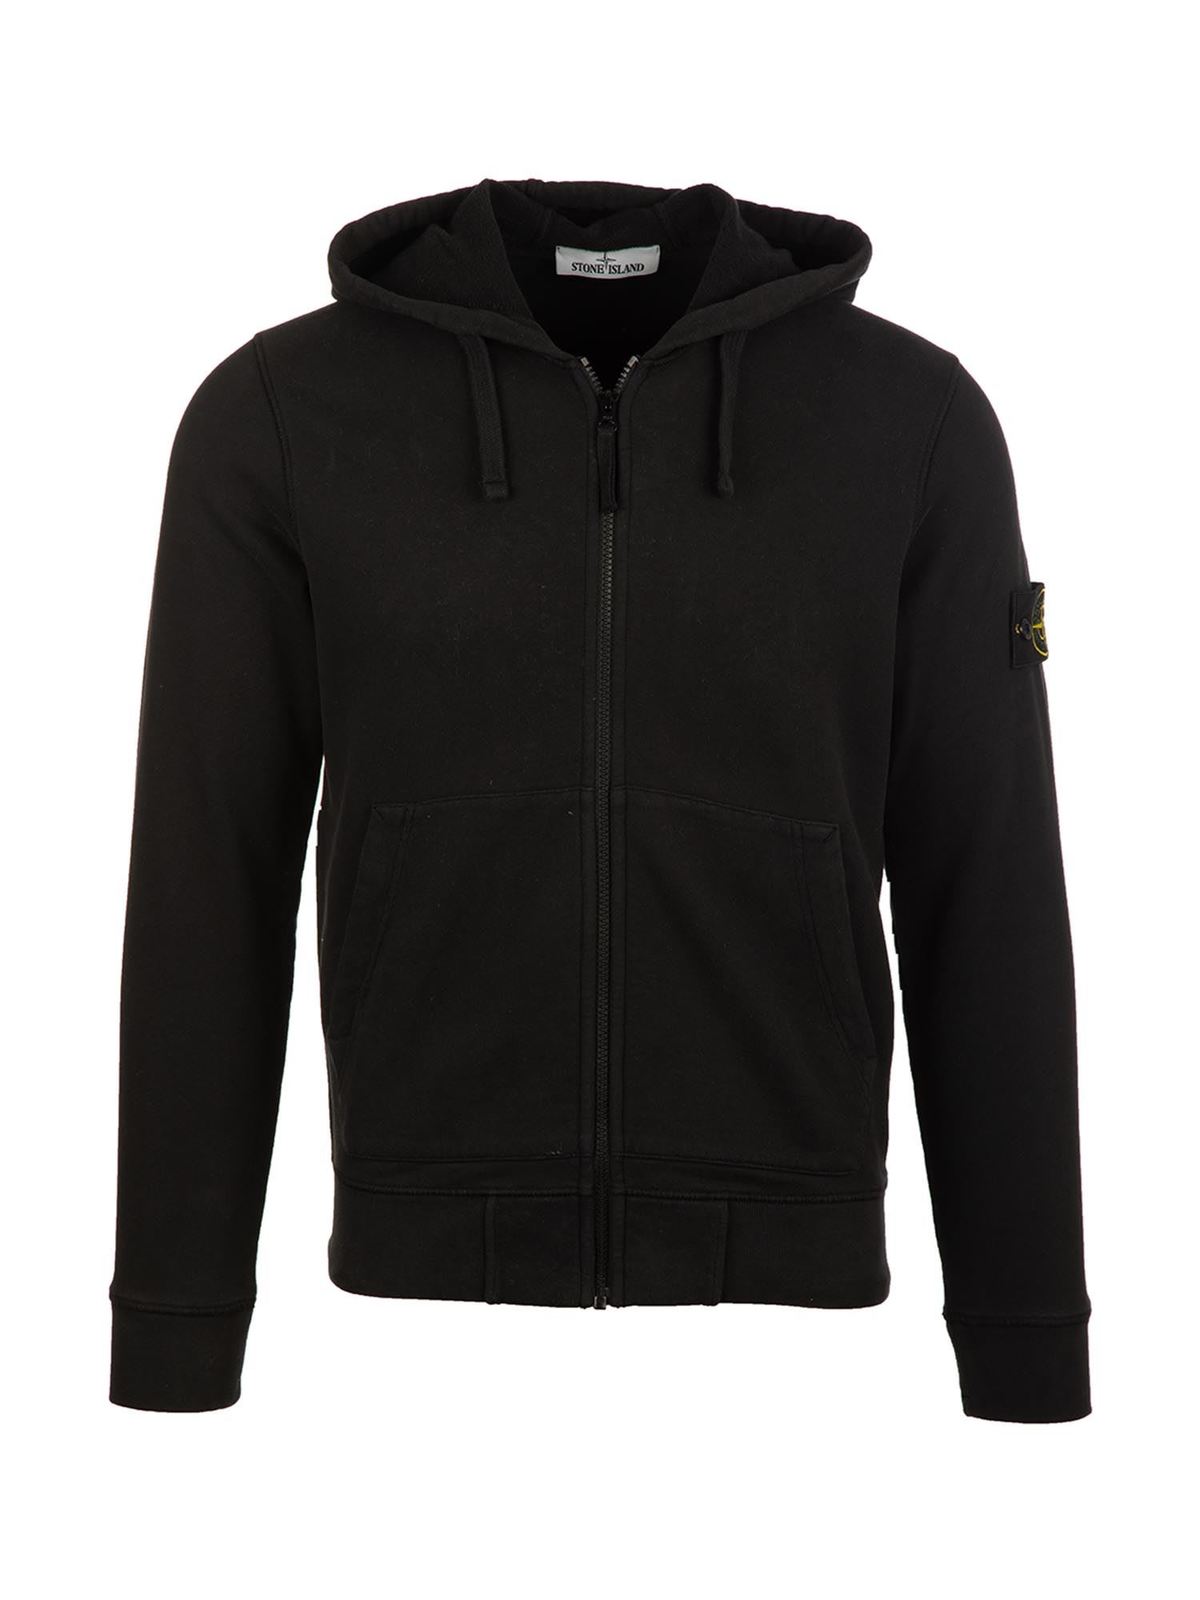 Zip and hood sweatshirt in black